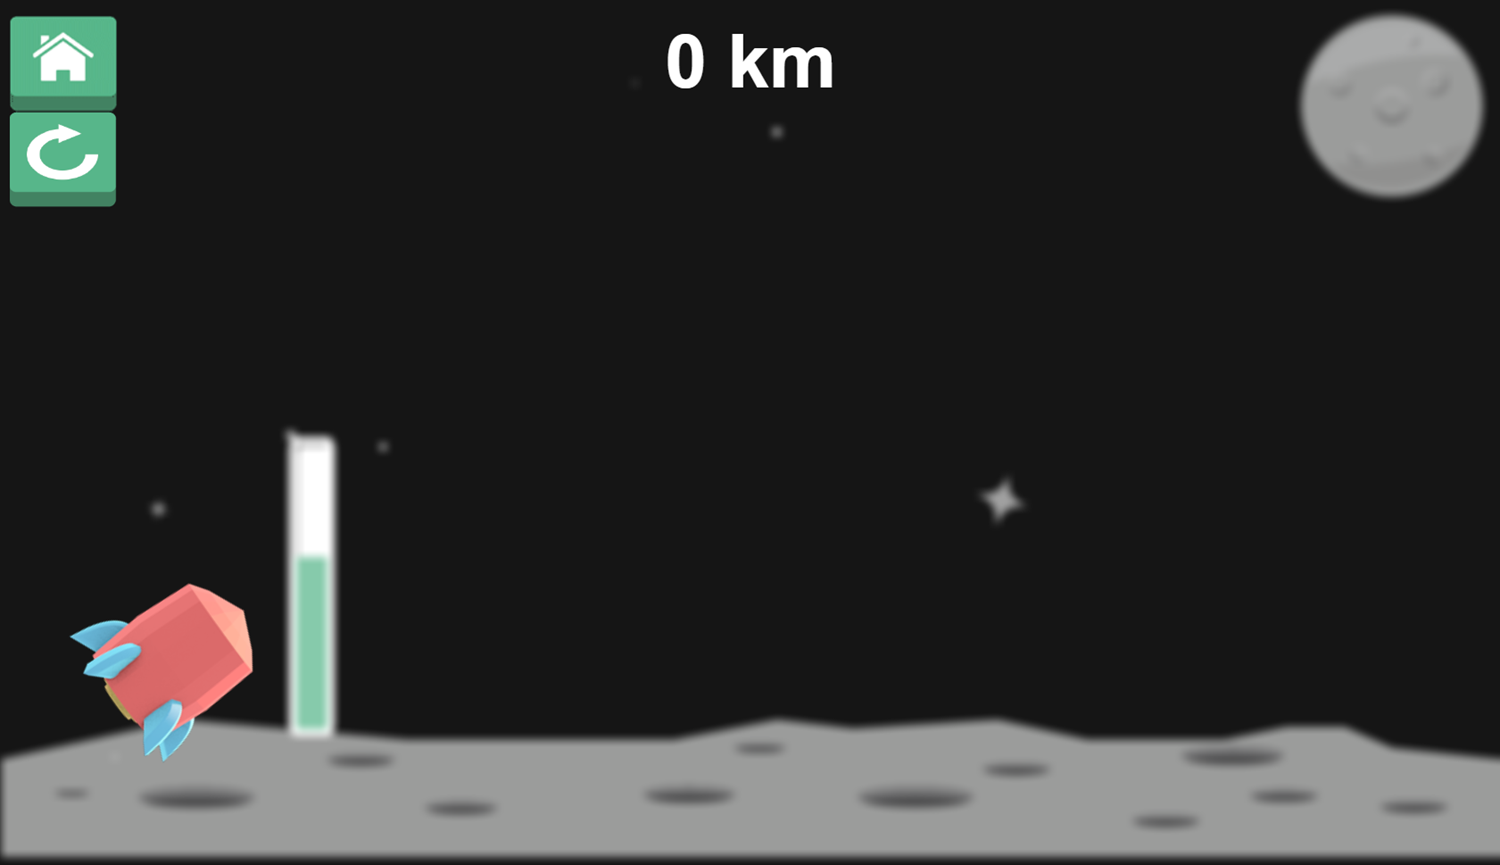 Dr Rocket Game Start Screenshot.